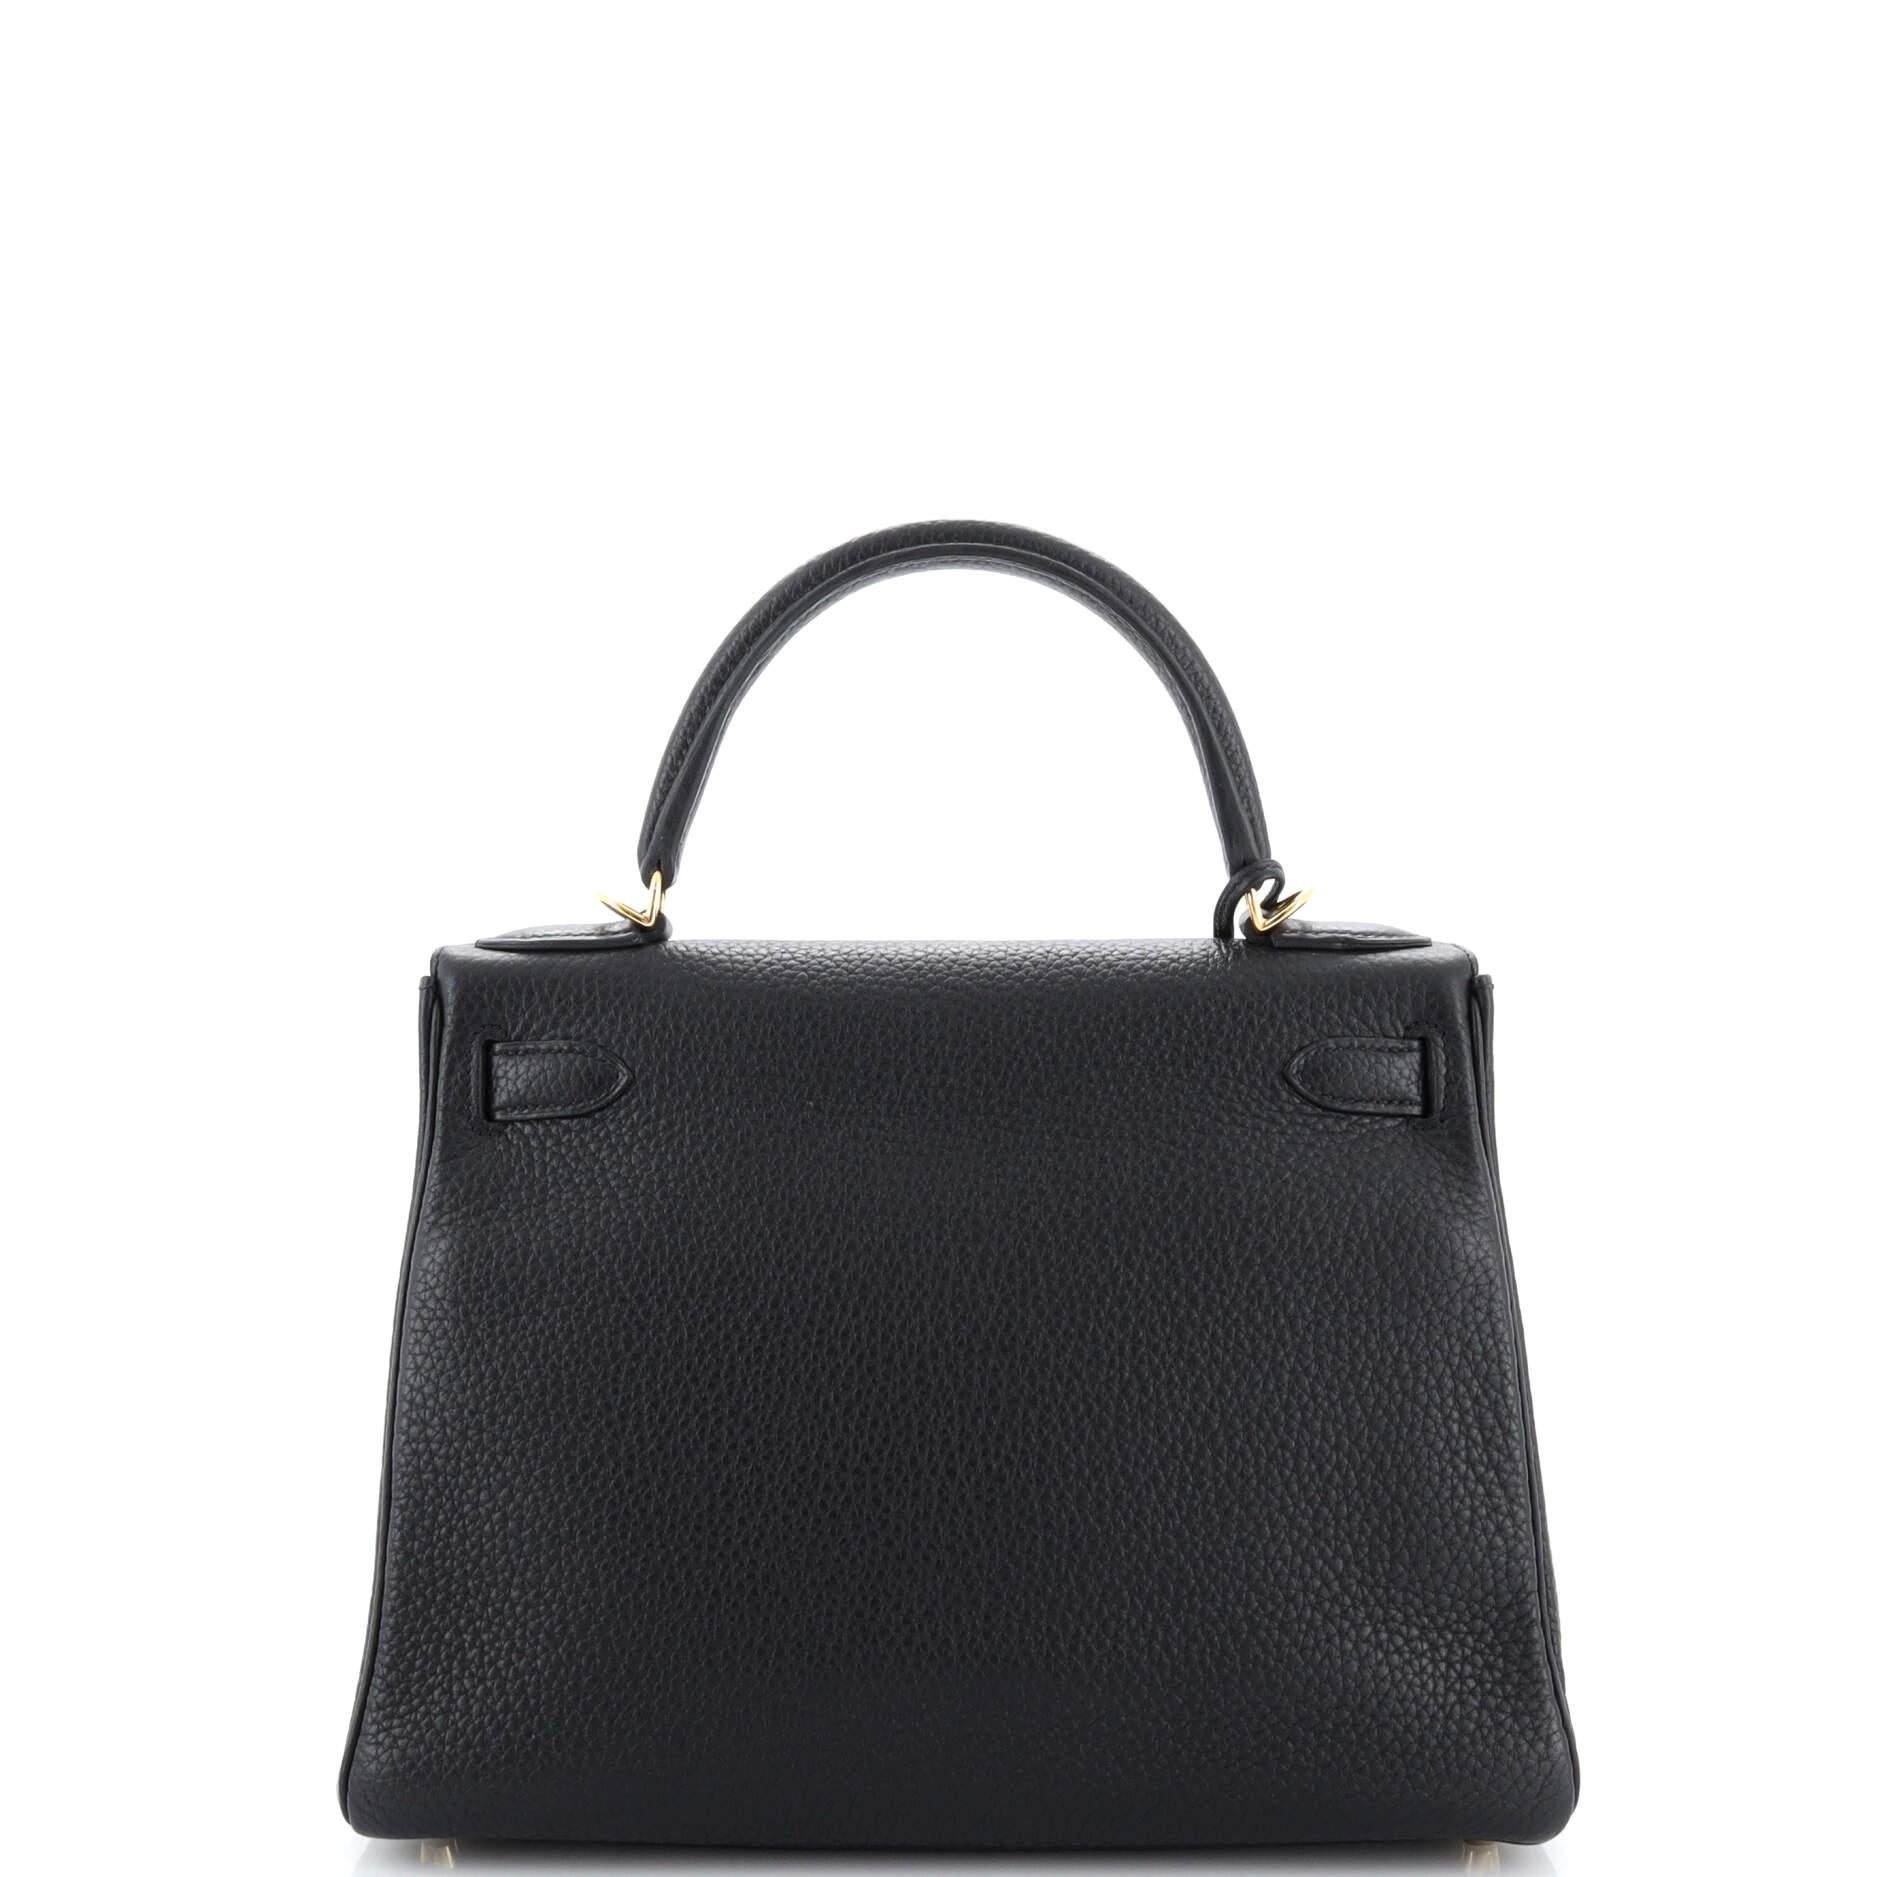 Women's or Men's Hermes Kelly Handbag Noir Togo with Gold Hardware 28